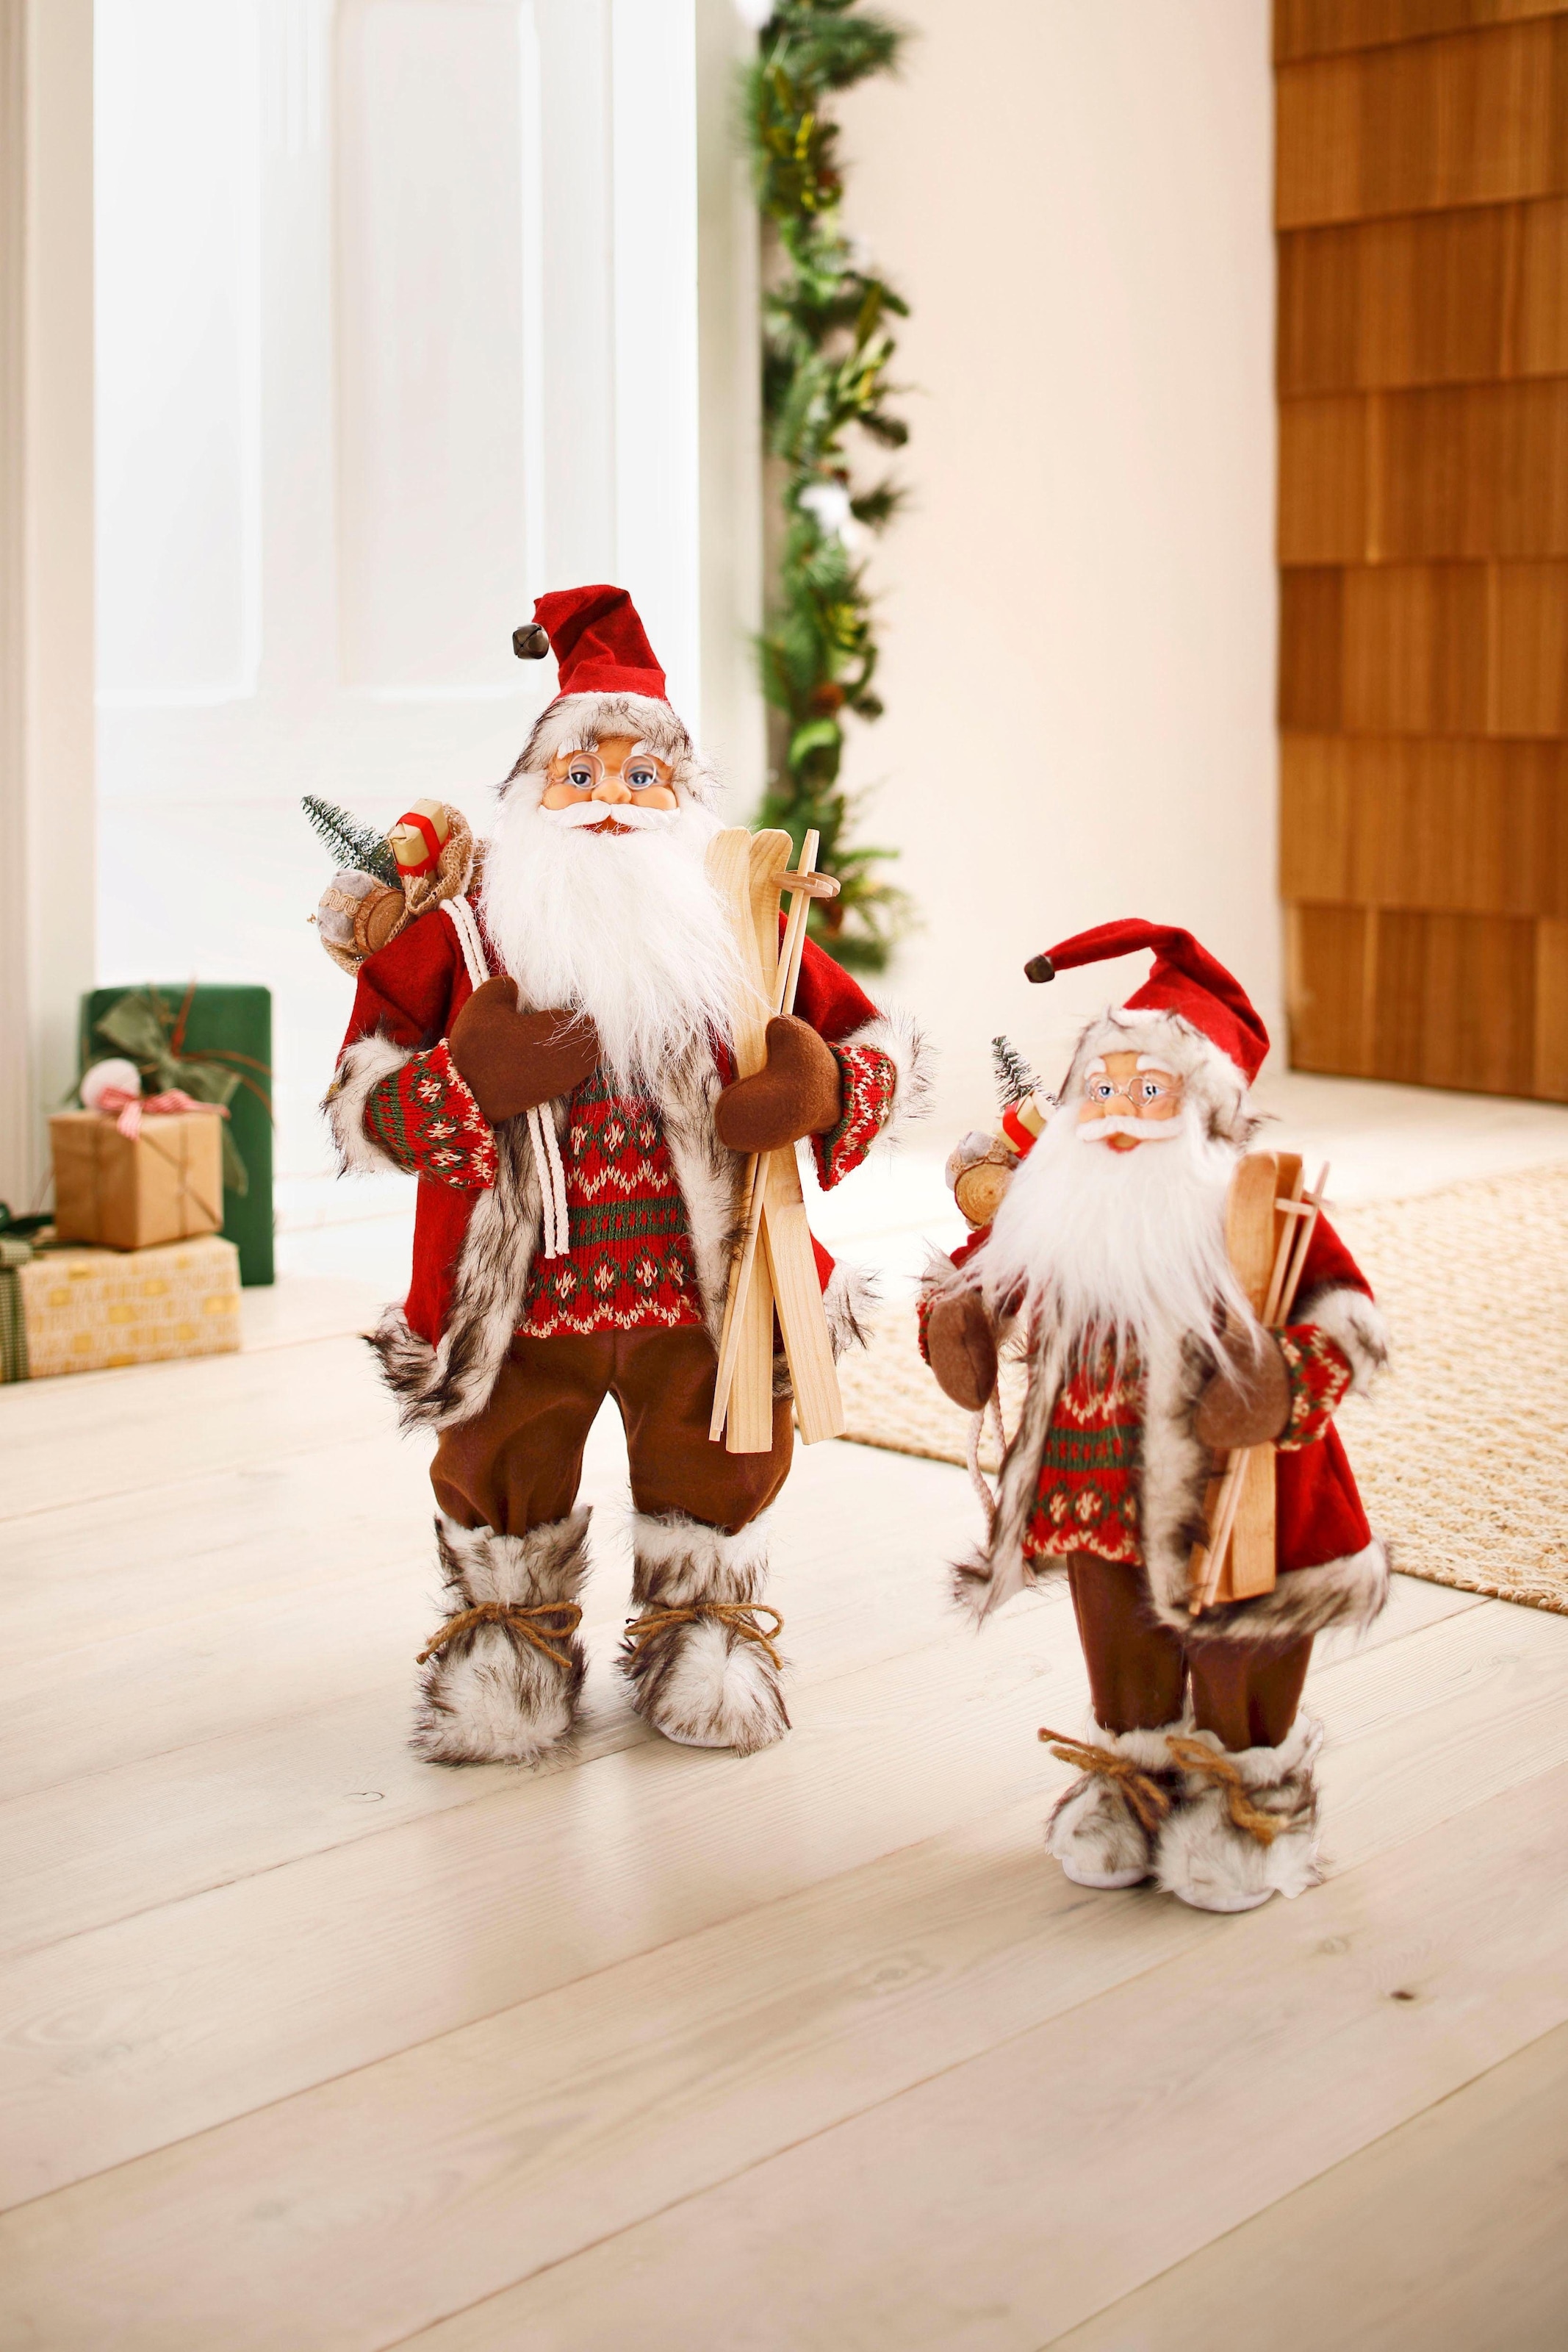 HOSSNER - HOMECOLLECTION Weihnachtsmann »Santa mit Skiern unter dem Arm und Geschenken«, Weihnachtsdeko, Dekofigur, Weihnachtsfigur